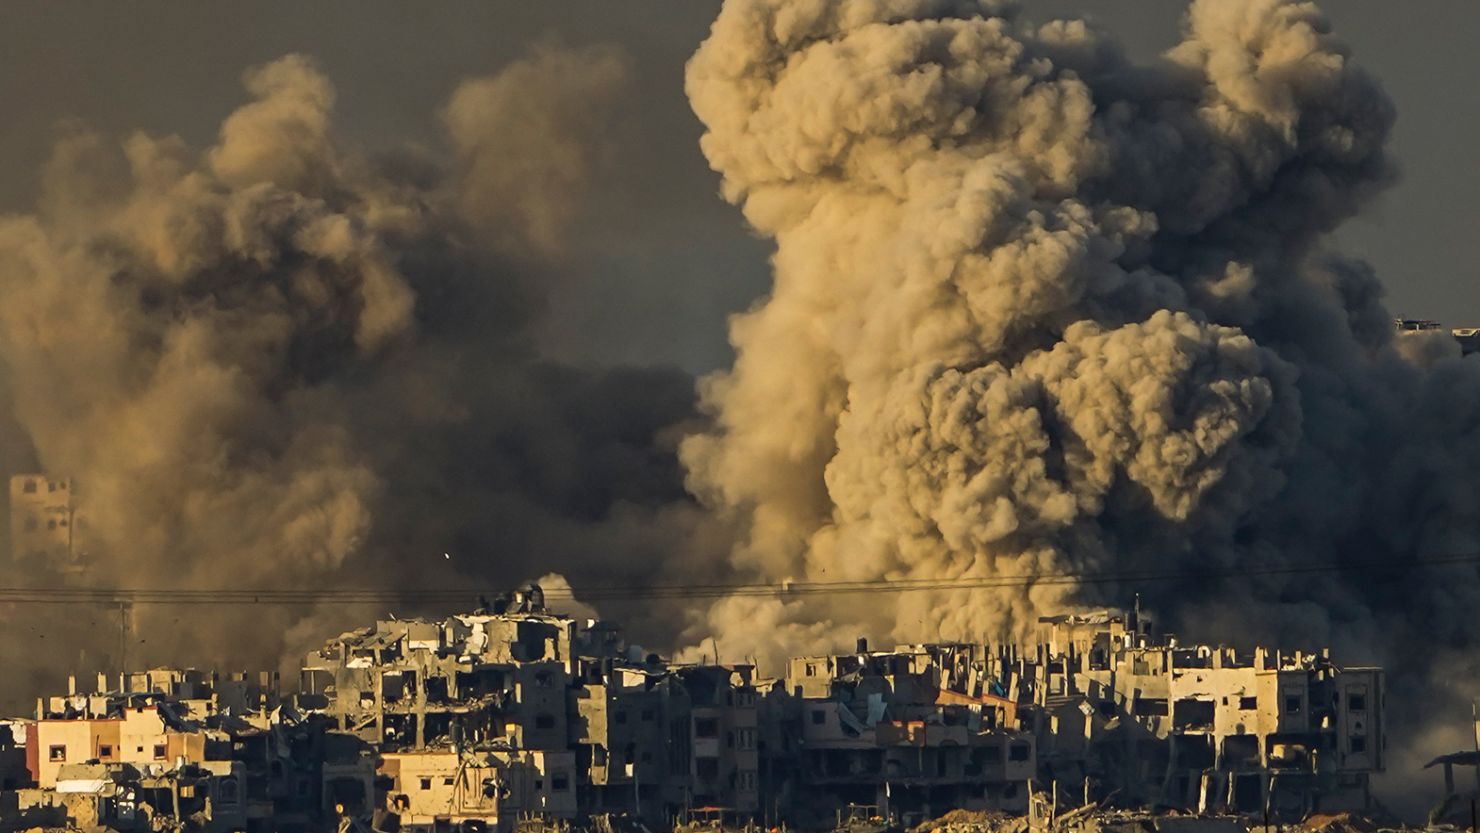 Israel-Gaza war: UN Security Council delays vote on Gaza aid